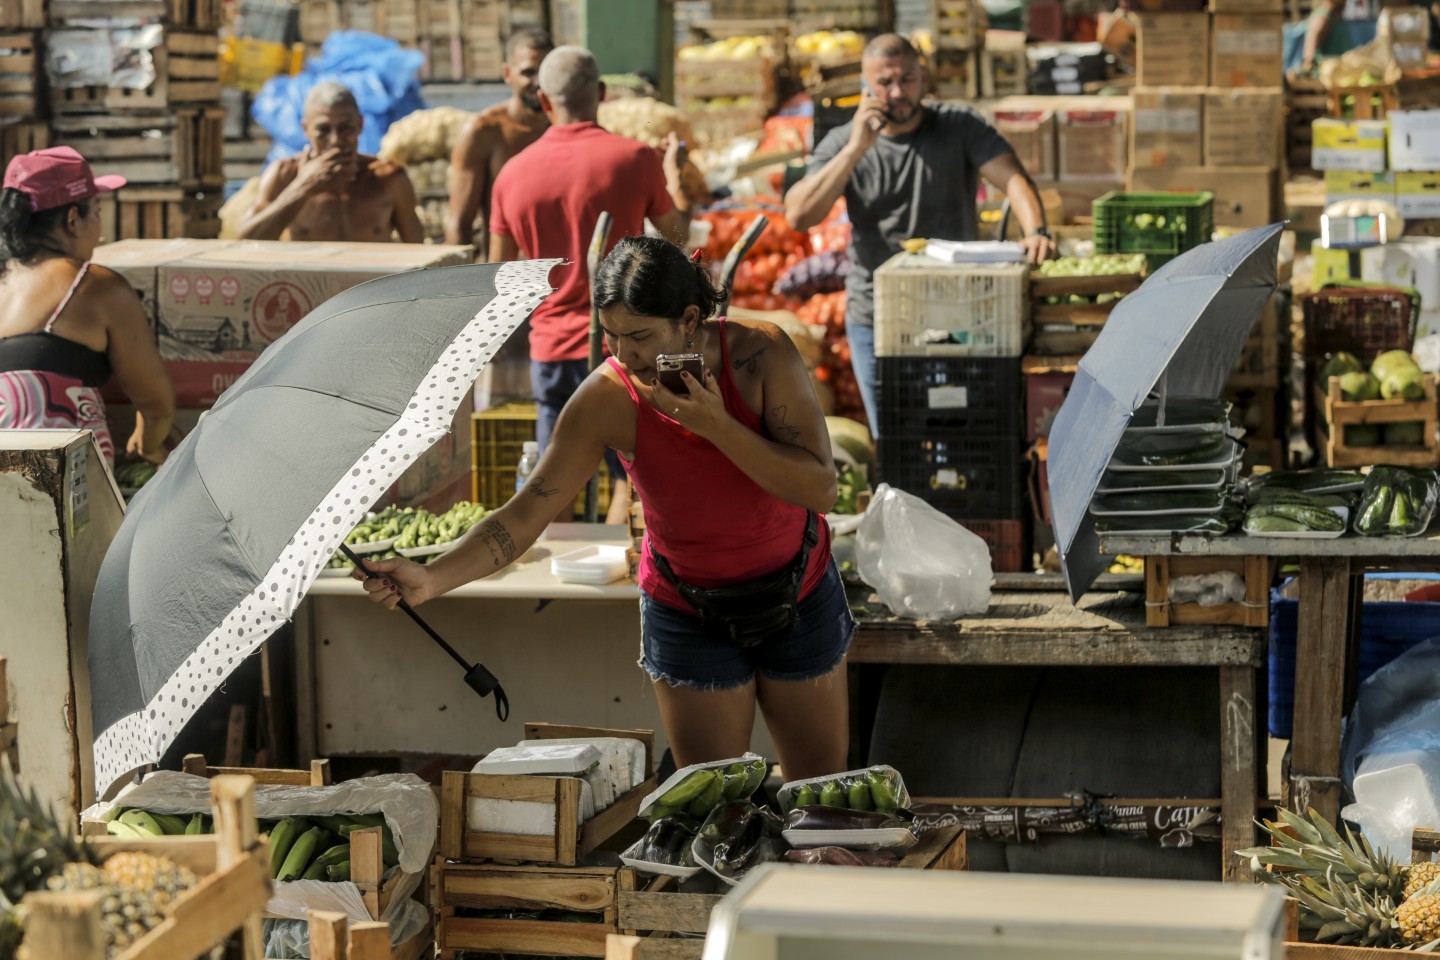 Vendedora usa sombrinha para proteger alimentos à venda no Ceasa do Rio. Calor extremo tem gerado maior perda de produtos, assim como aumento dos preços — Foto: Gabriel de Paiva / Agência O Globo